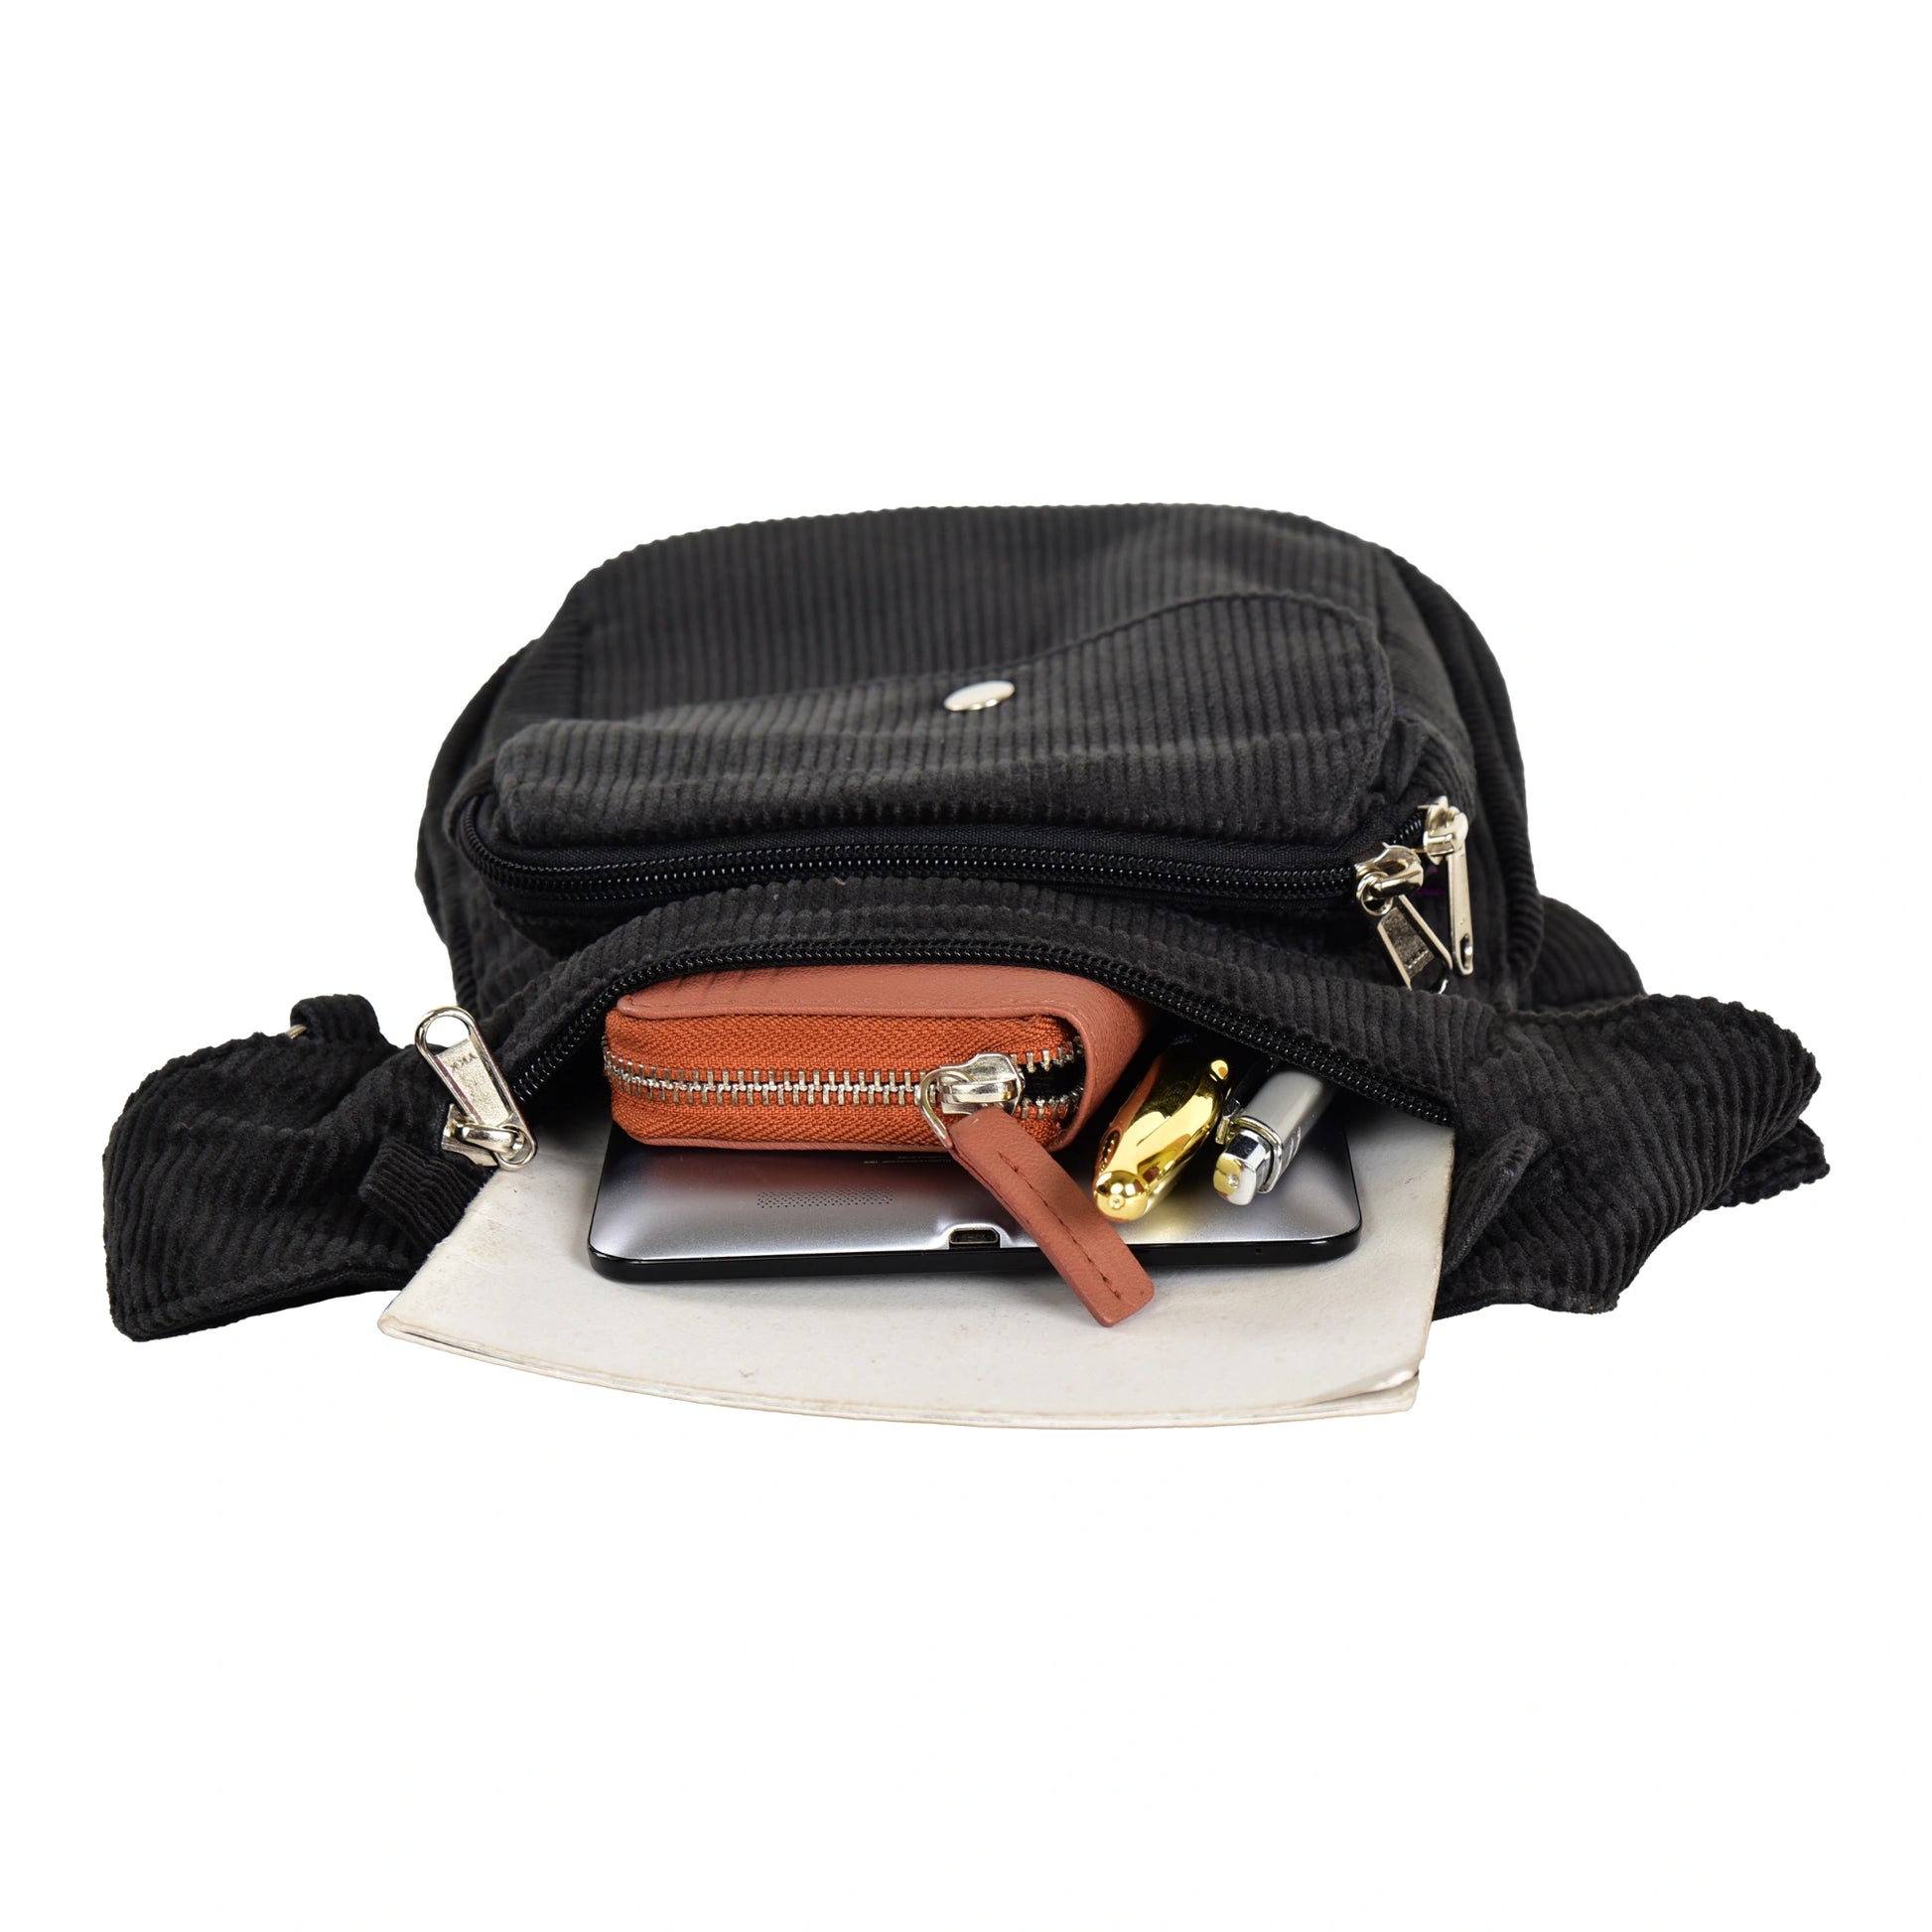 Gürteltasche, Gassi-Tasche aus Cord Grau. Das Hauptfach und vordere Reißverschlussfach bietet Platz für Handy, Portemonnaie und andere Kleinigkeiten.